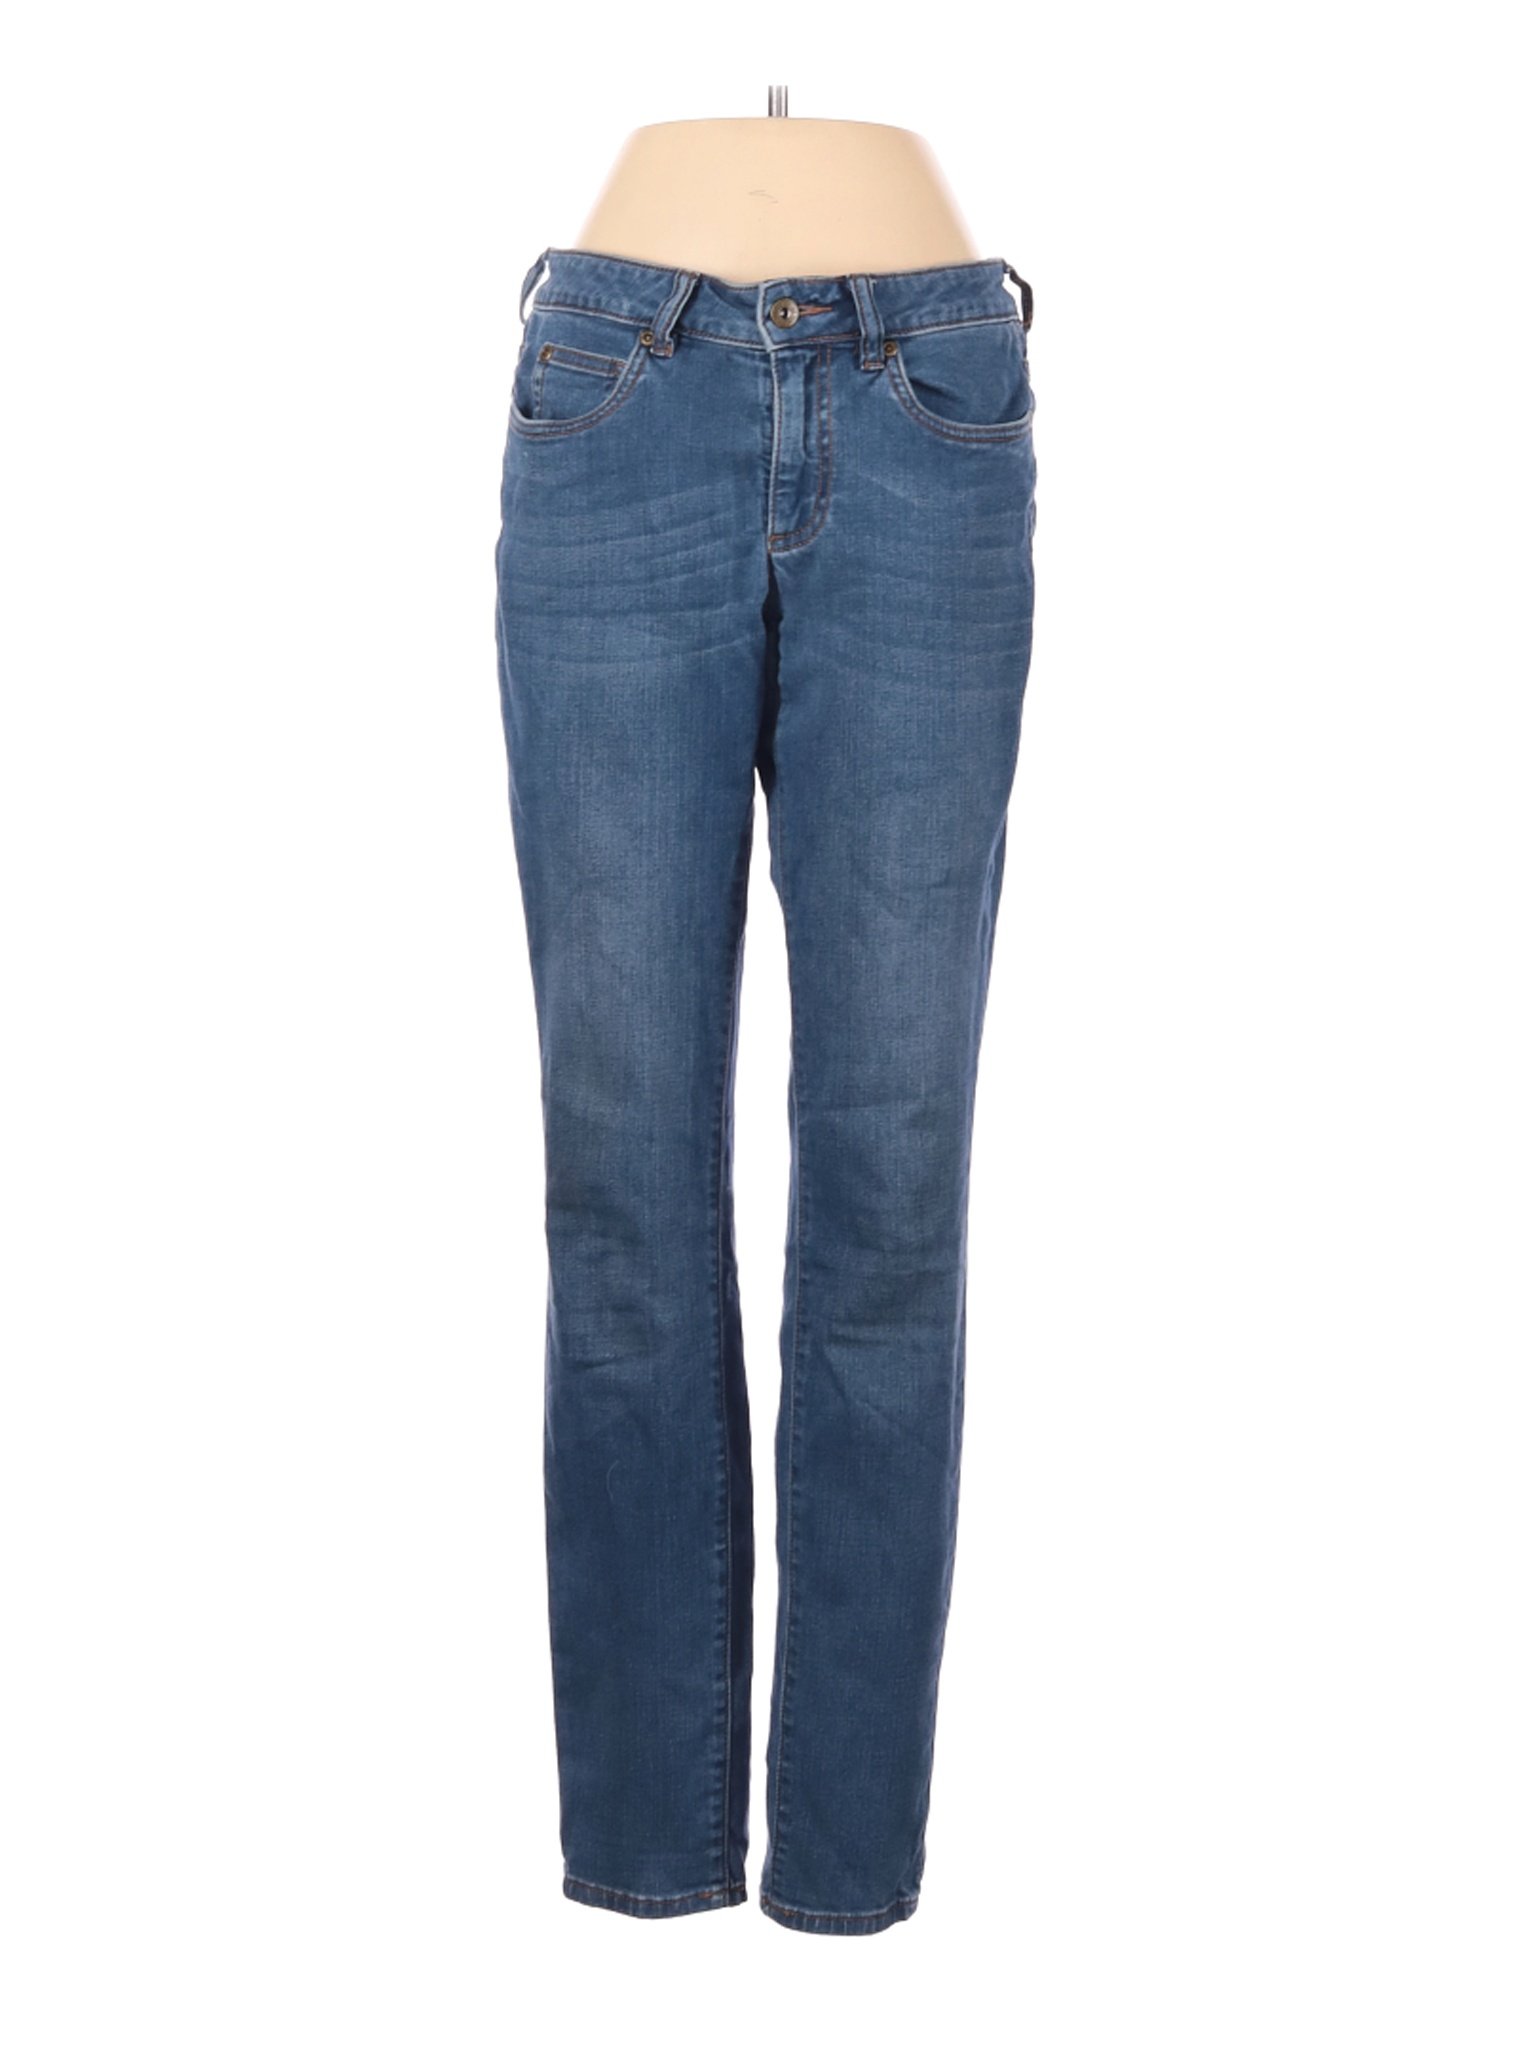 Vince Camuto Women Blue Jeans 25W | eBay